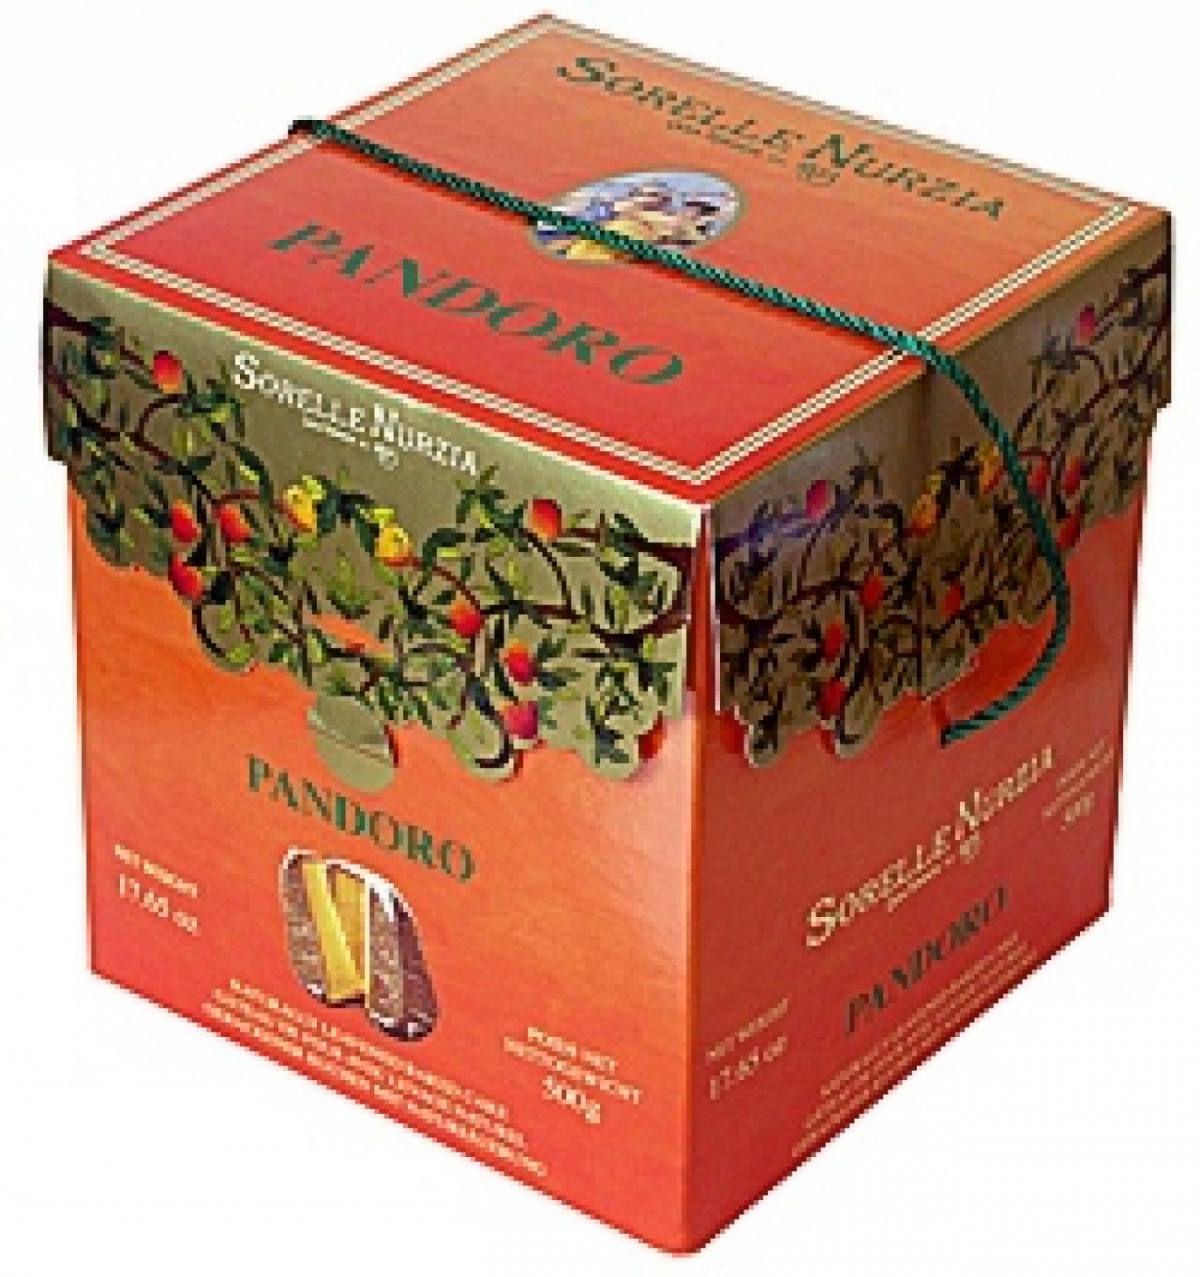 Boxed Pandori from Sorelle Nurzia